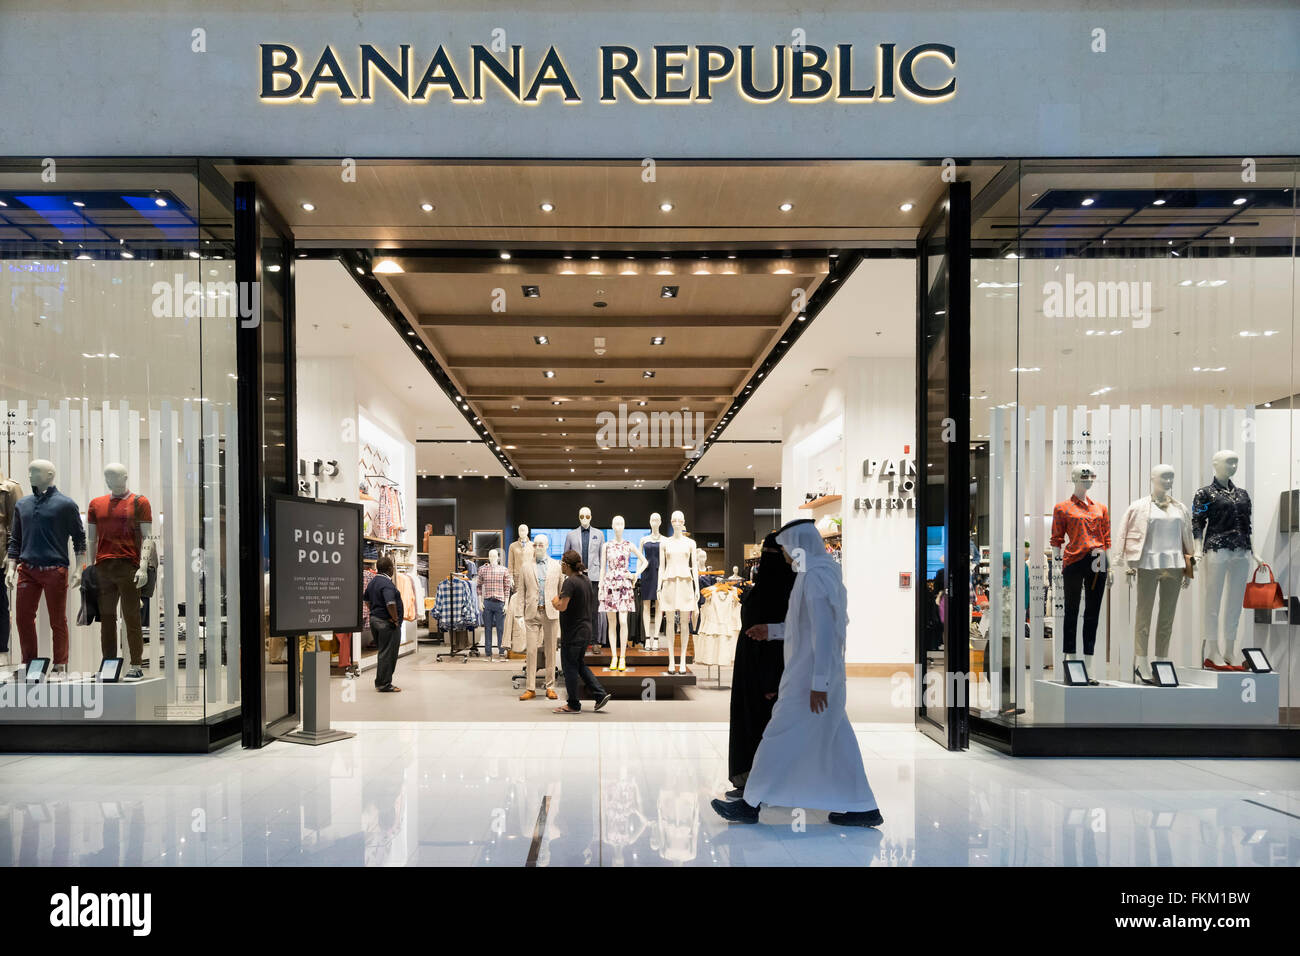 Banana republic shop immagini e fotografie stock ad alta risoluzione - Alamy